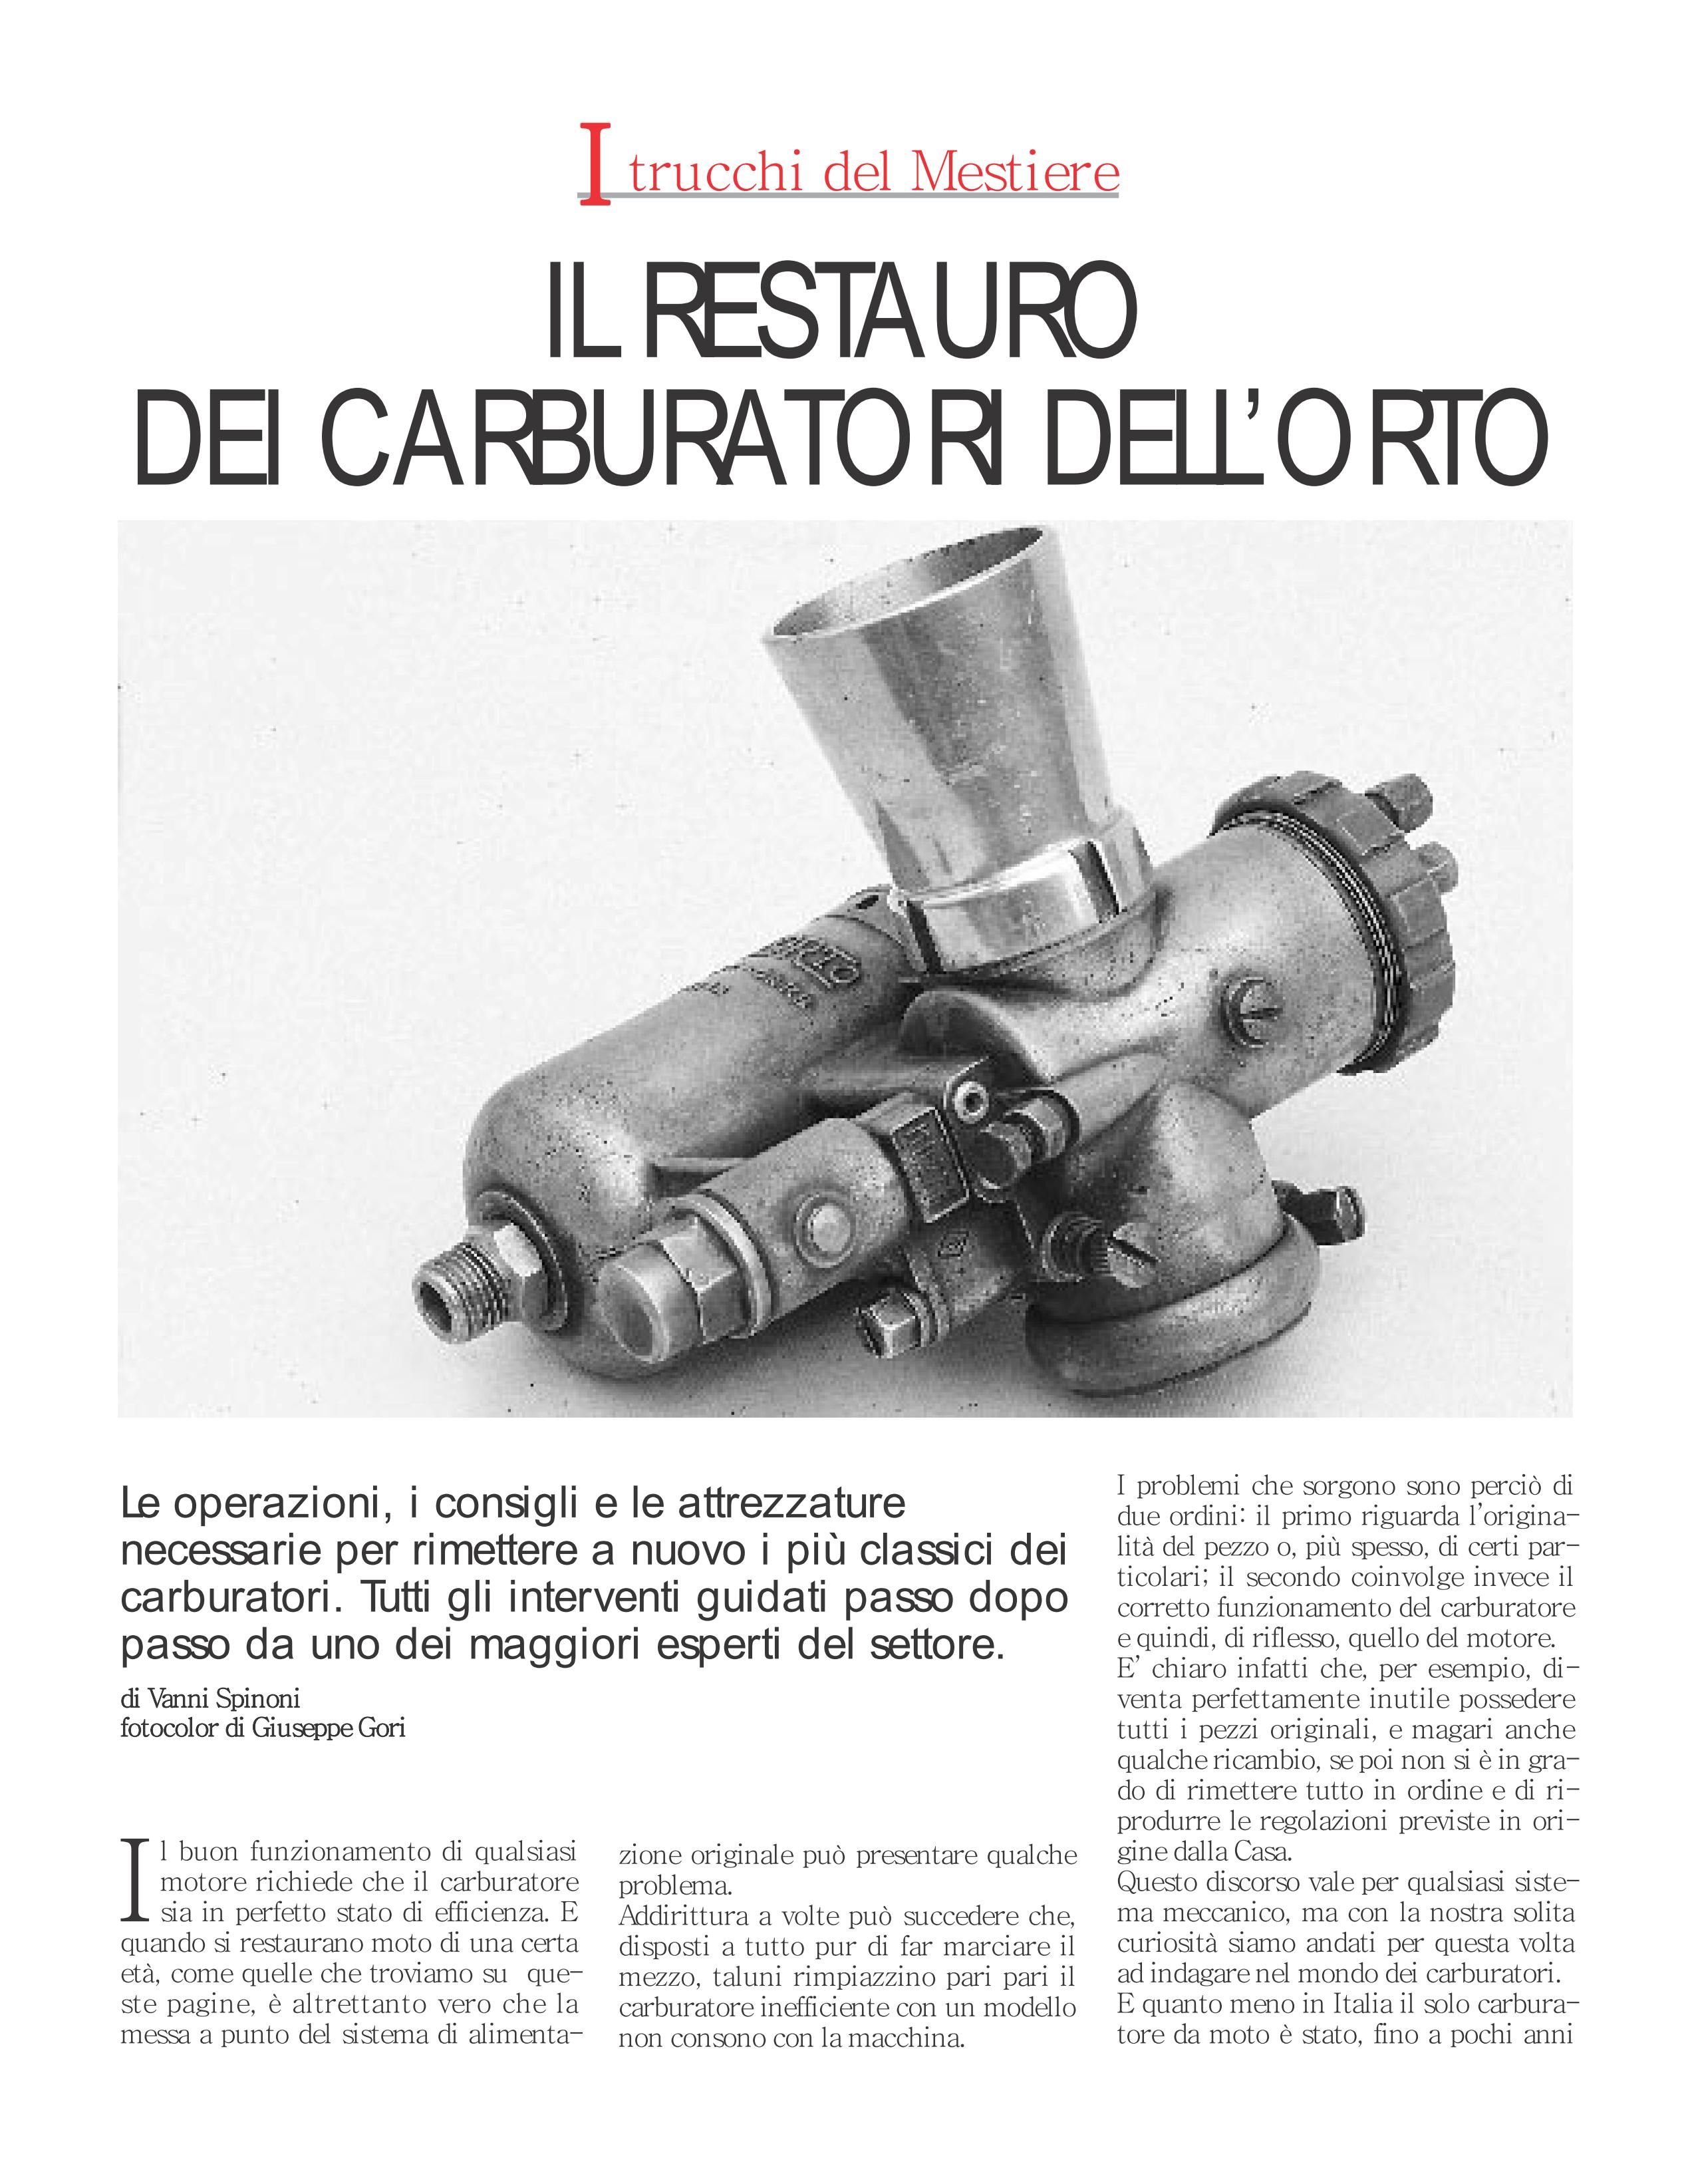 restauro carburatori Dellorto01.jpg